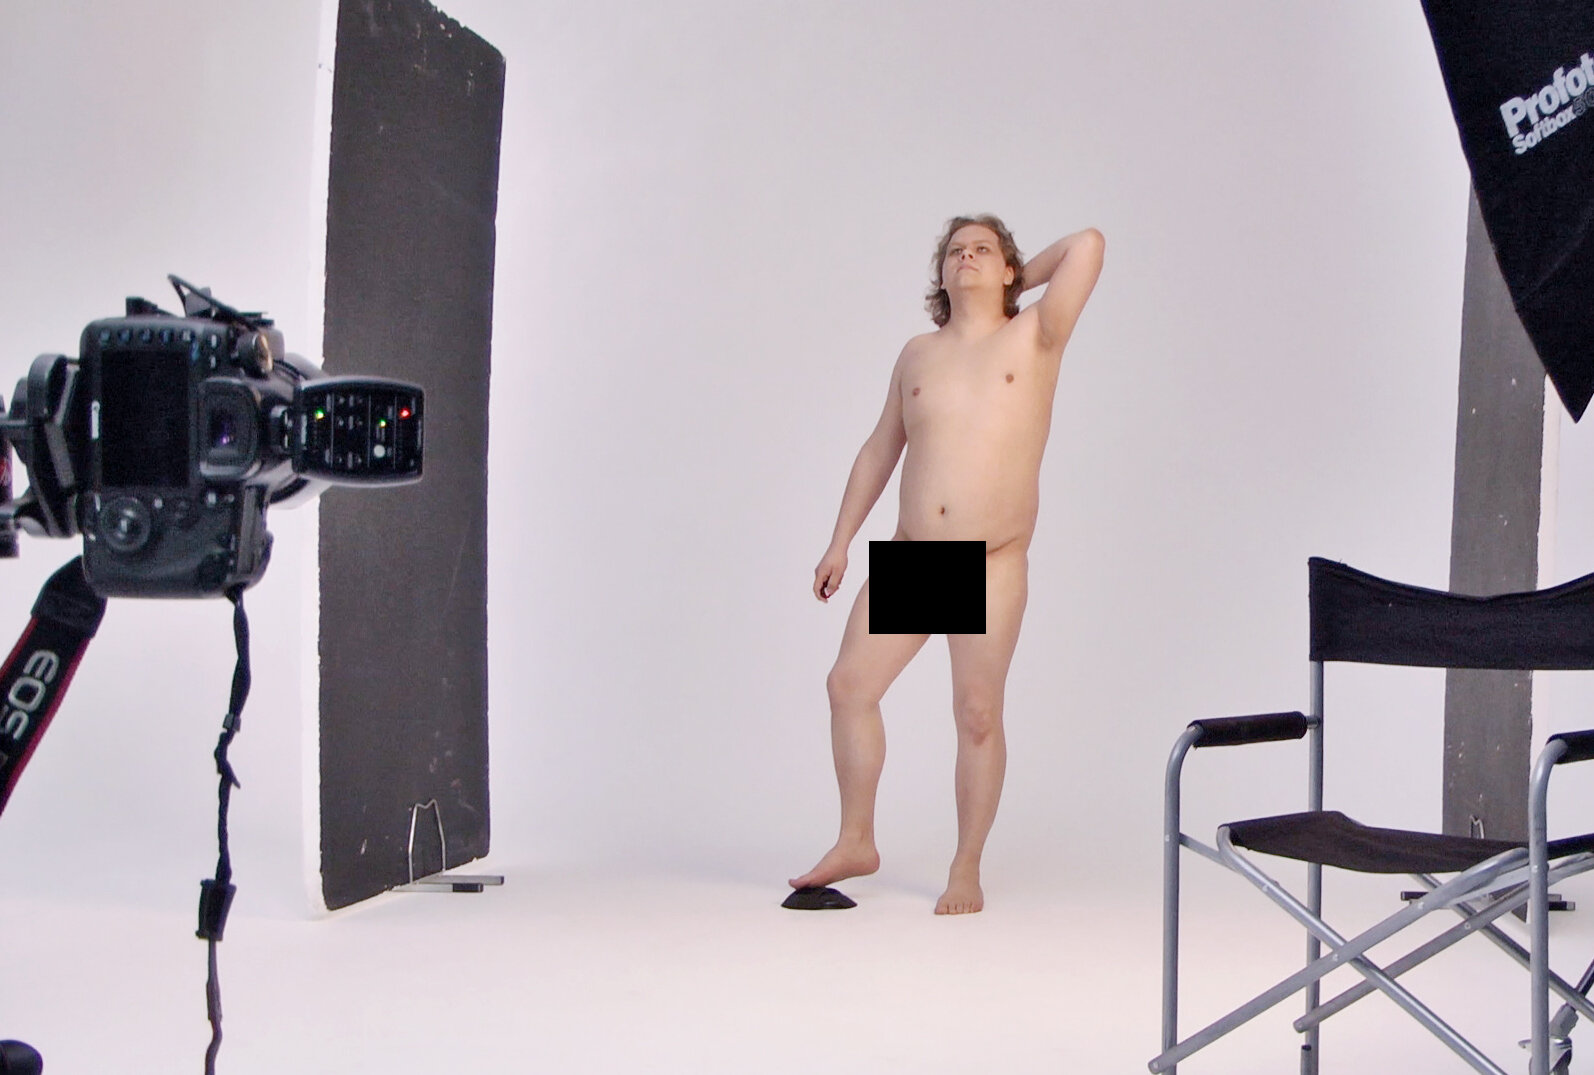 Din nakne kropp er bra nok — Kulturkritikk.no bilde bilde